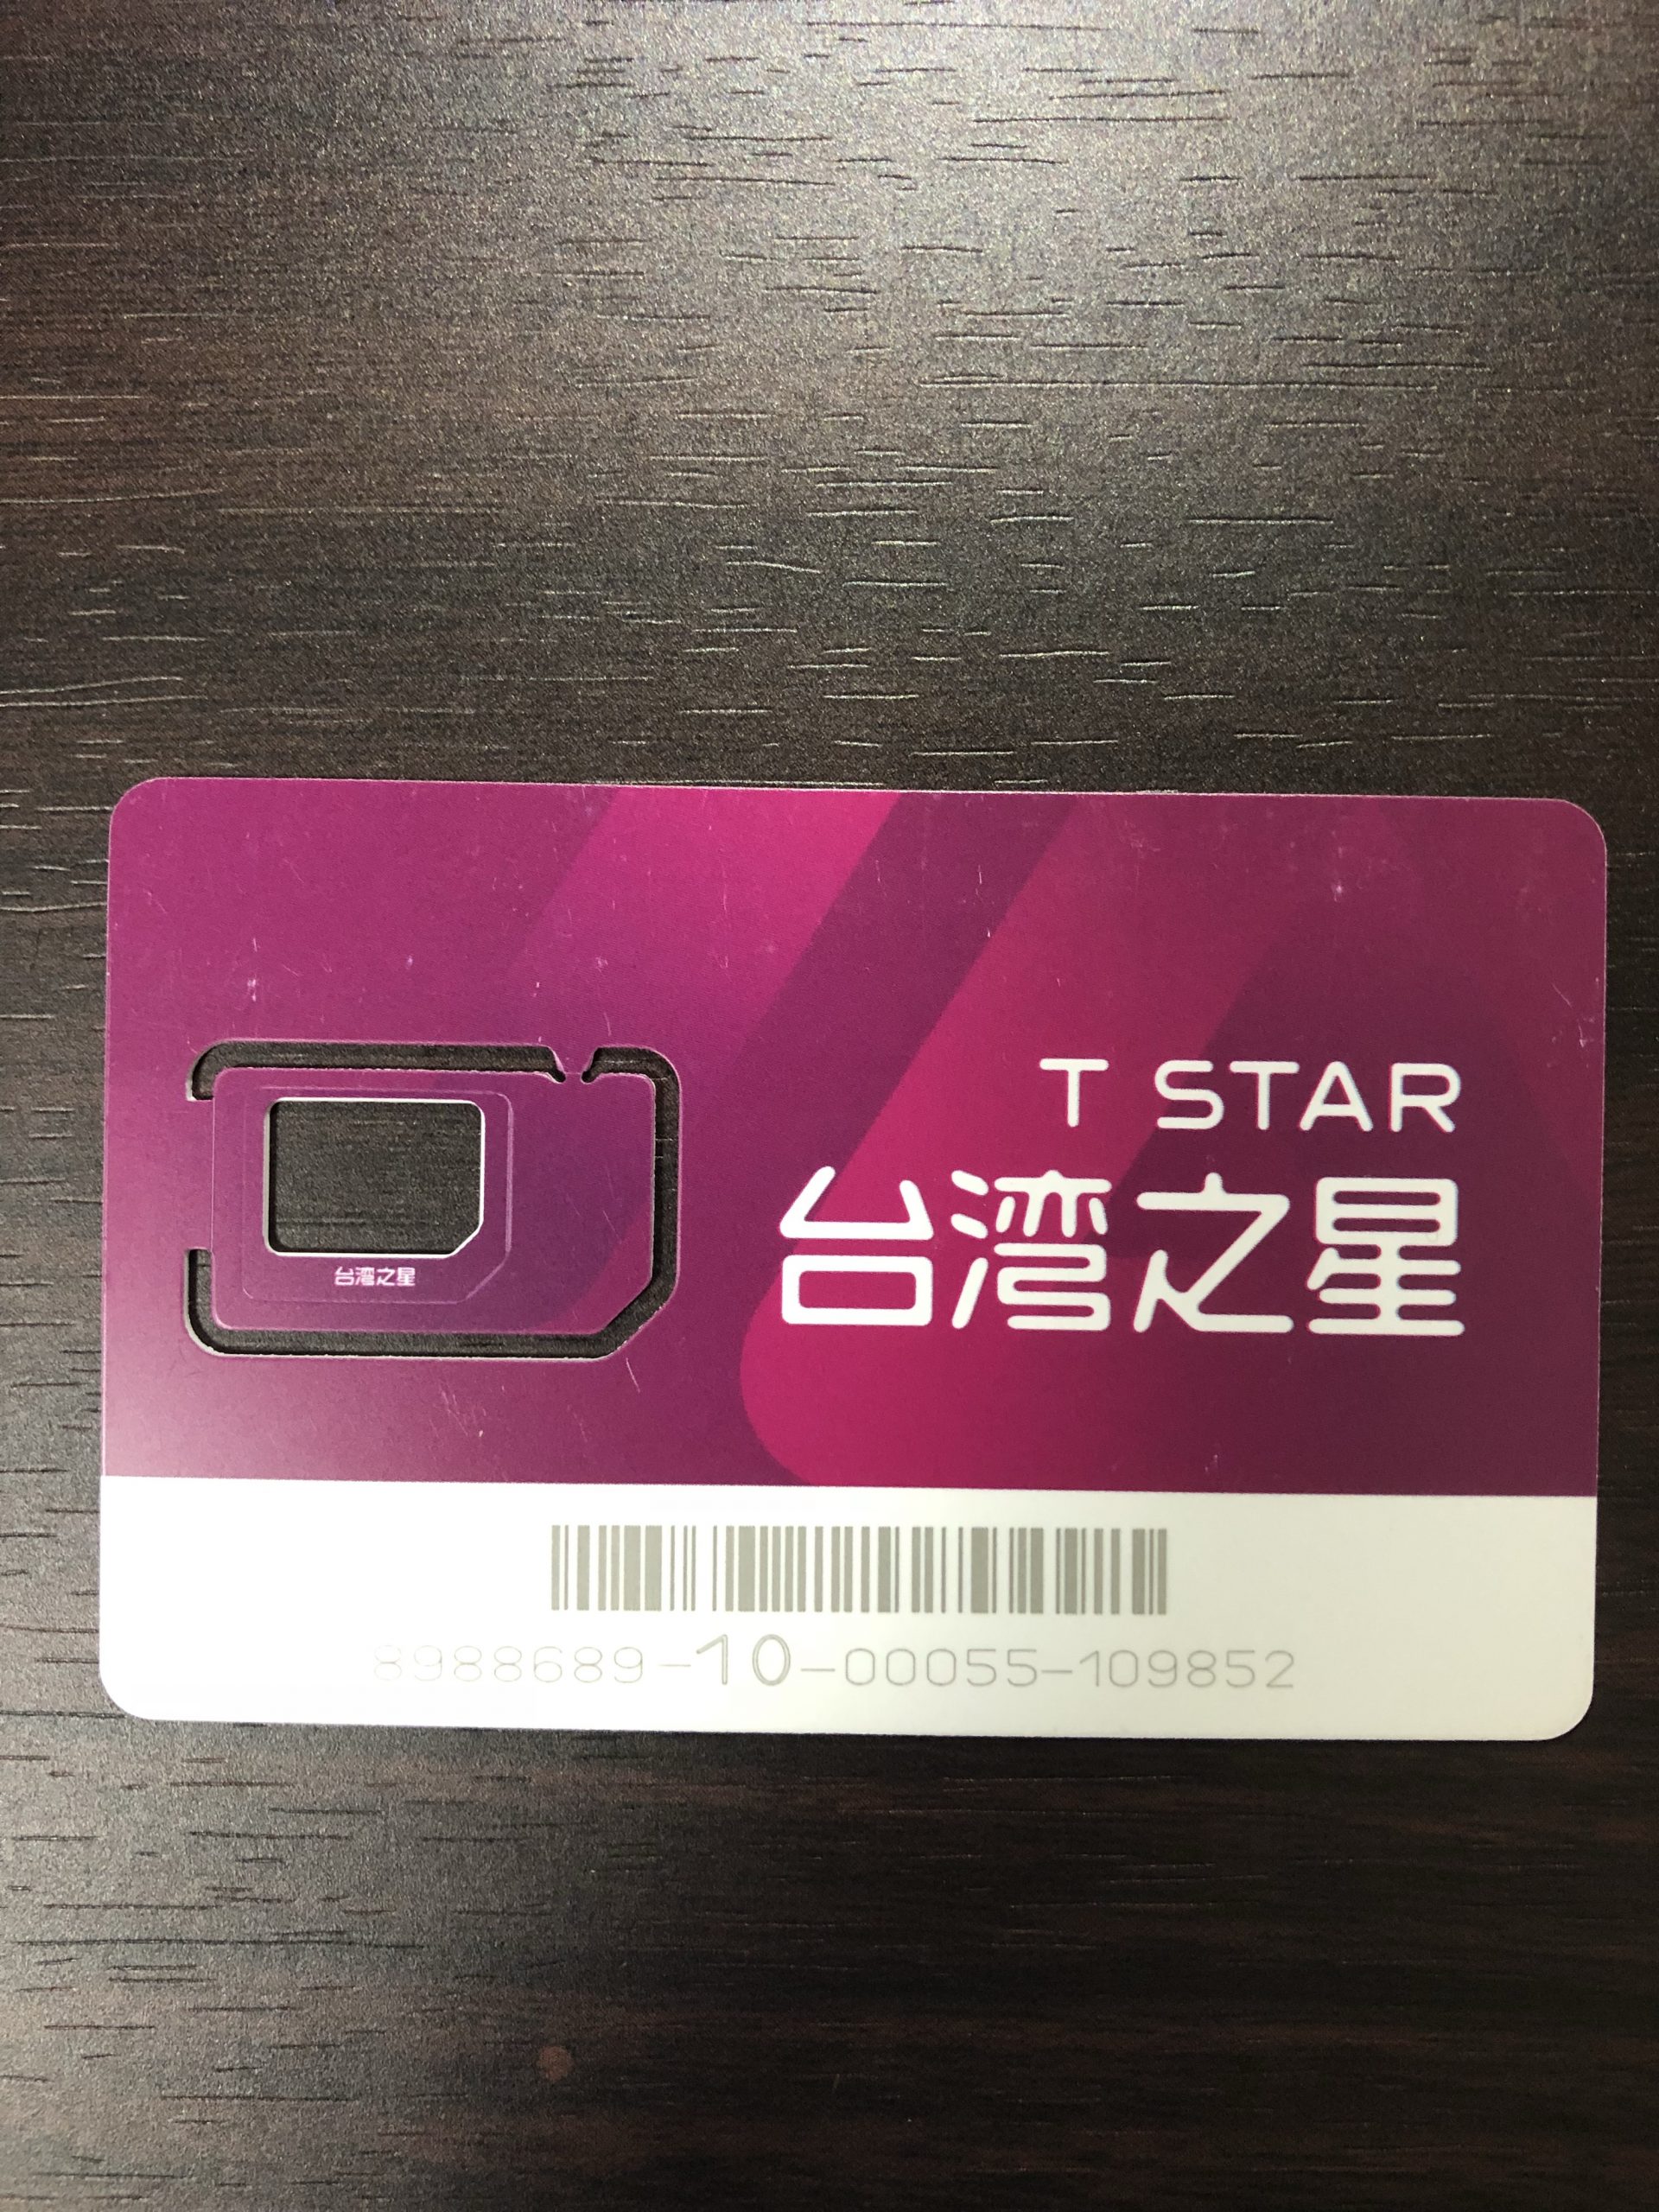 台湾のSIMカード。